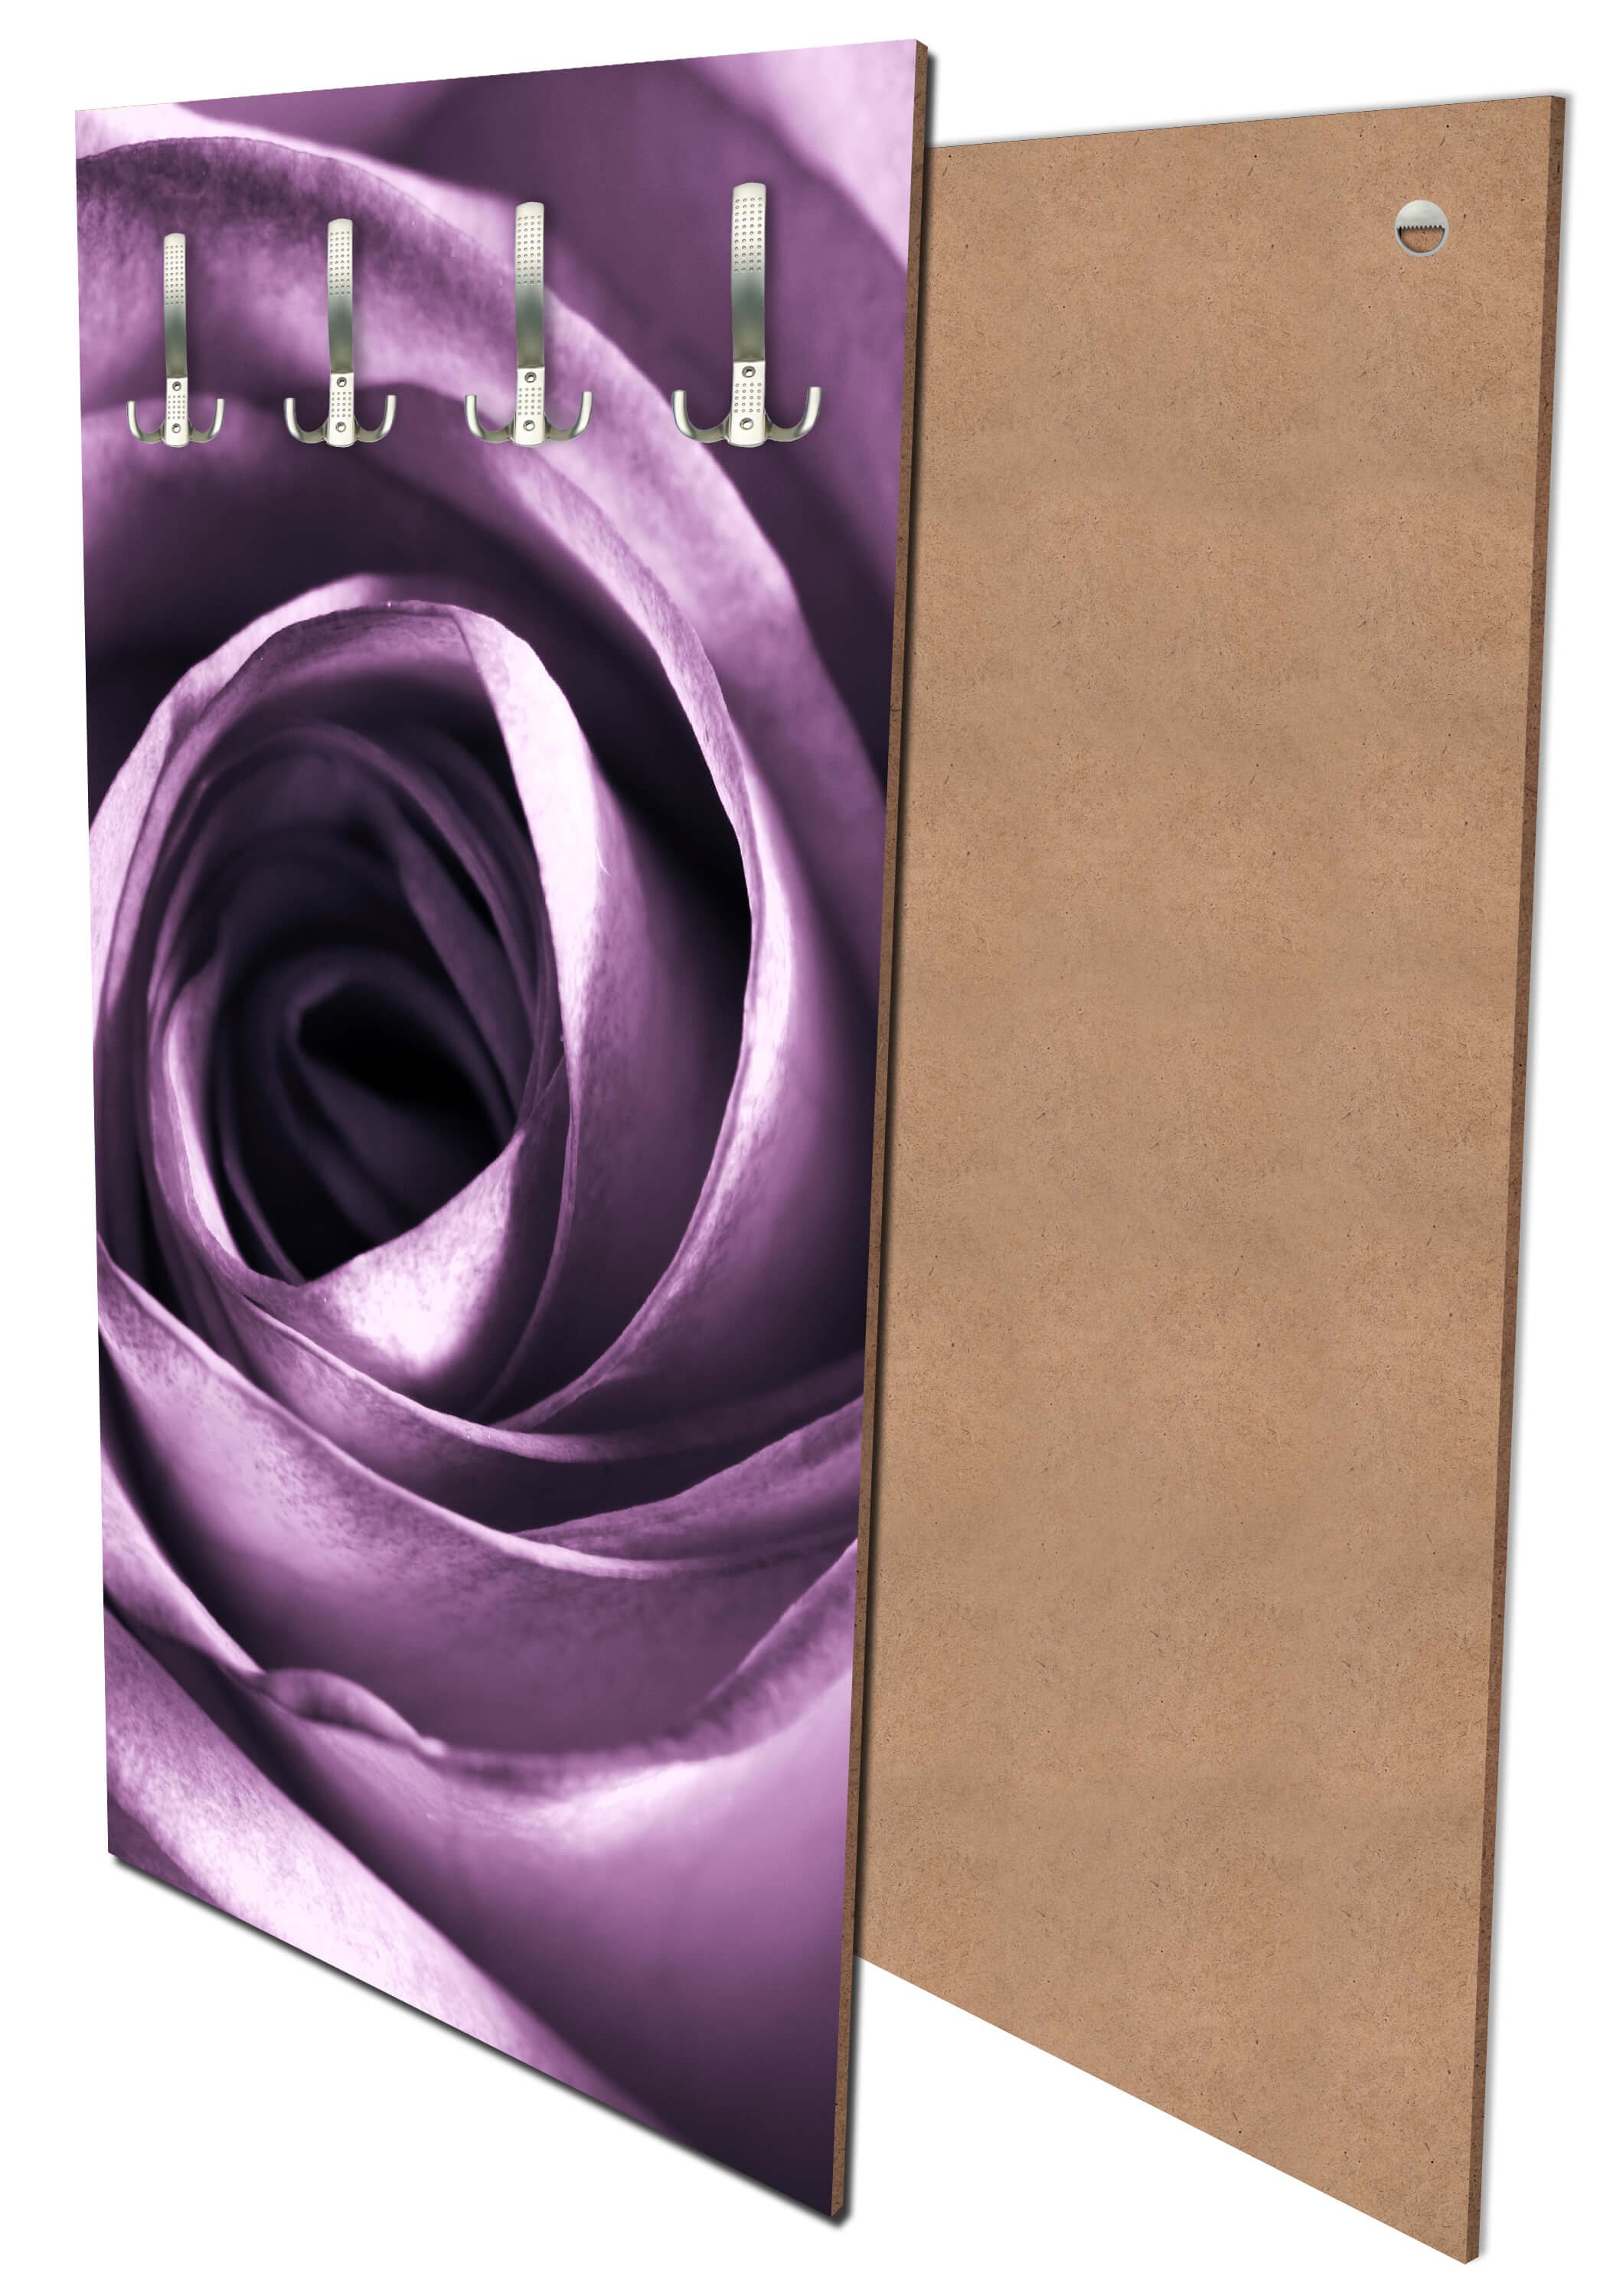 Garderobe violette Rose M0051 entdecken - Bild 1